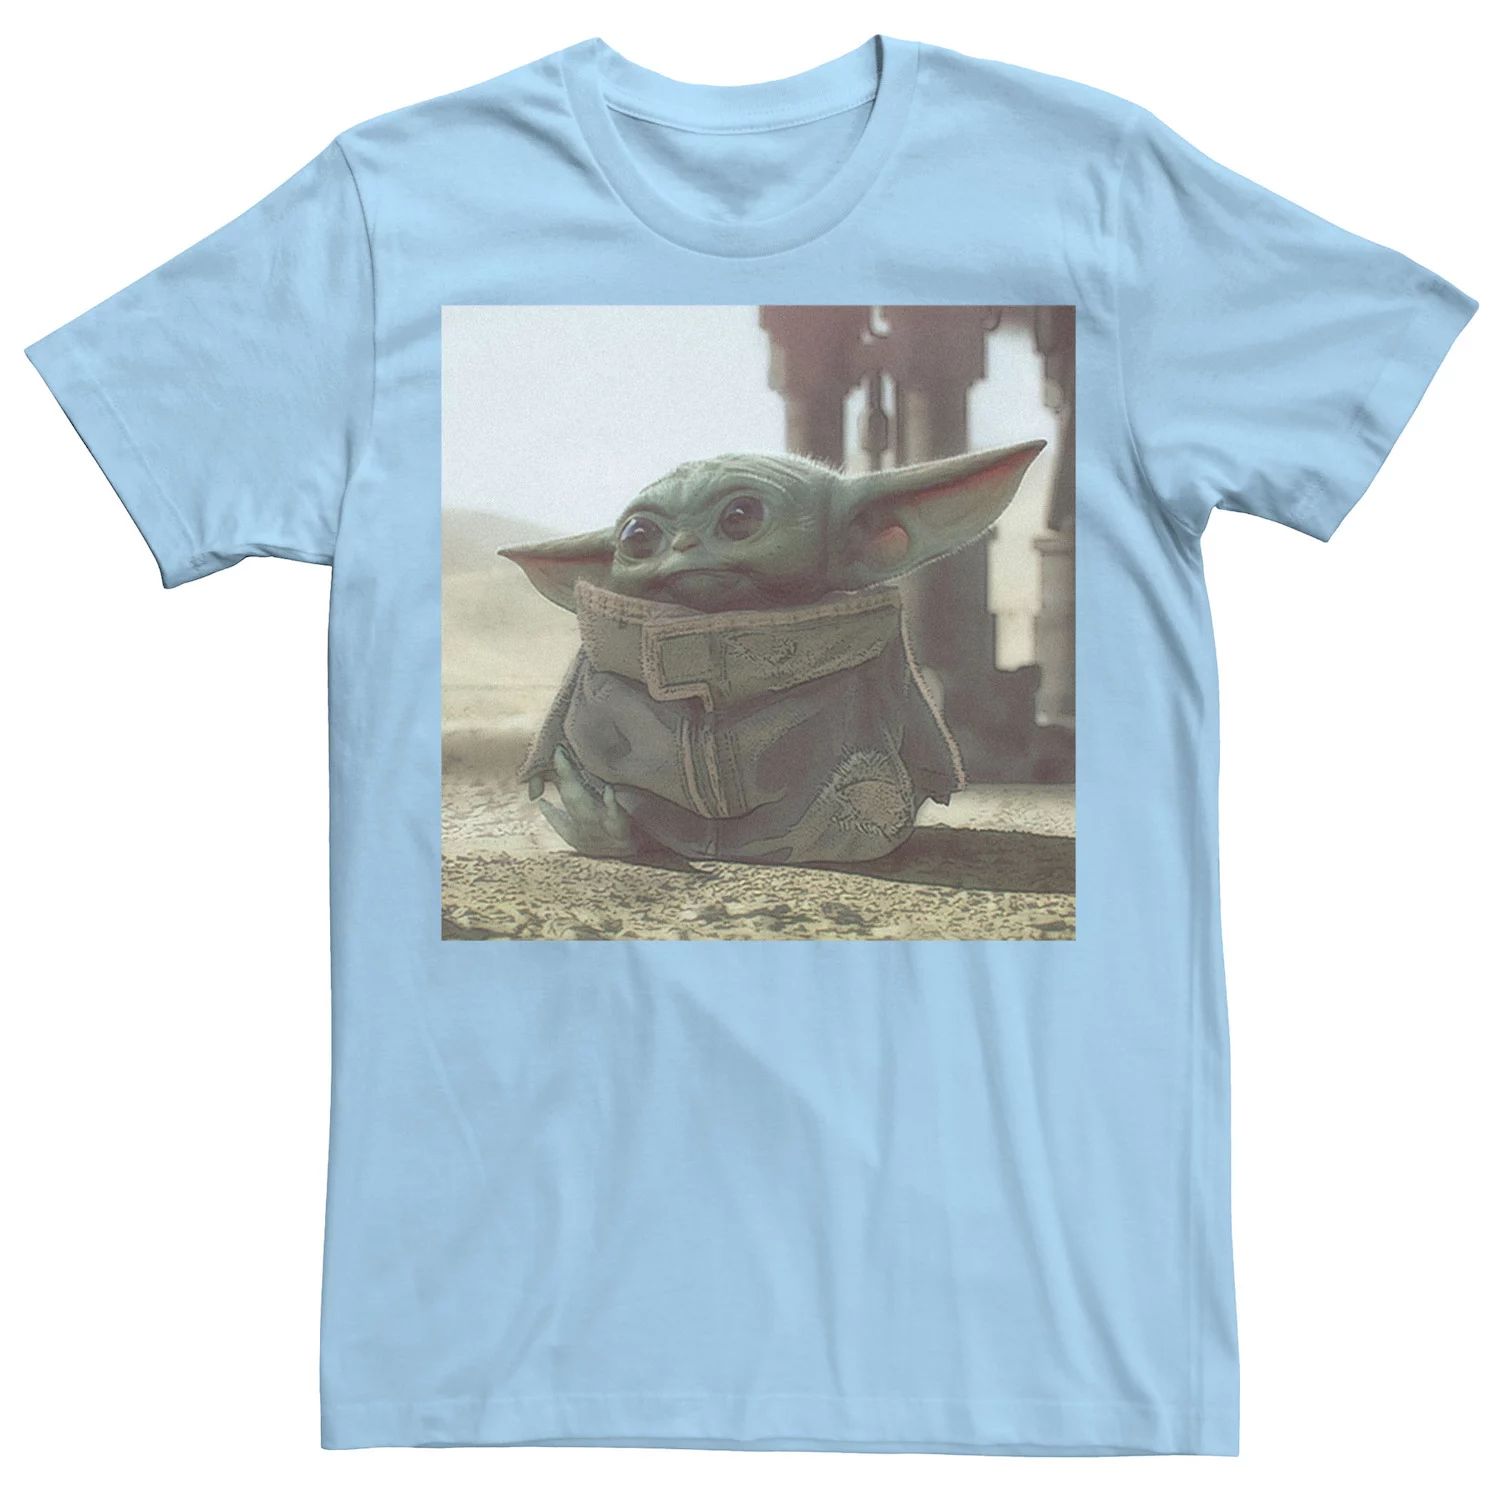 Мужская футболка с плакатом «Звездные войны, мандалорец, ребенок, известный как Малыш Йода» Star Wars, светло-синий мужская футболка с плакатом звездные войны мандалорец ребенок известный как малыш йода star wars светло синий